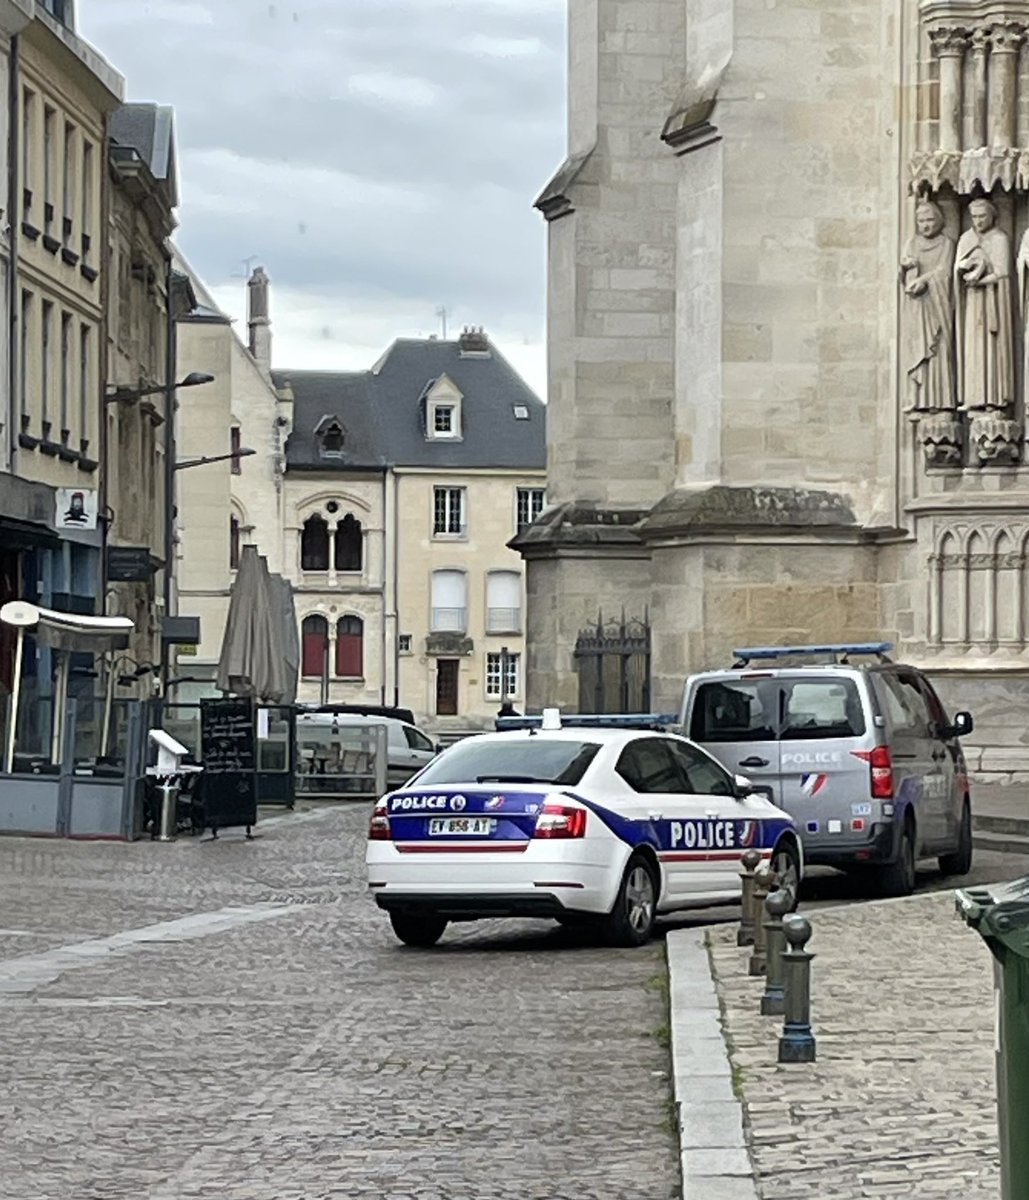 ⚠️Déploiement de plusieurs véhicules de Police autour de la Cathédrale d'#Amiens. L'accès est interdit par des policiers en arme à l'esplanade et aux rues aux alentours 😐